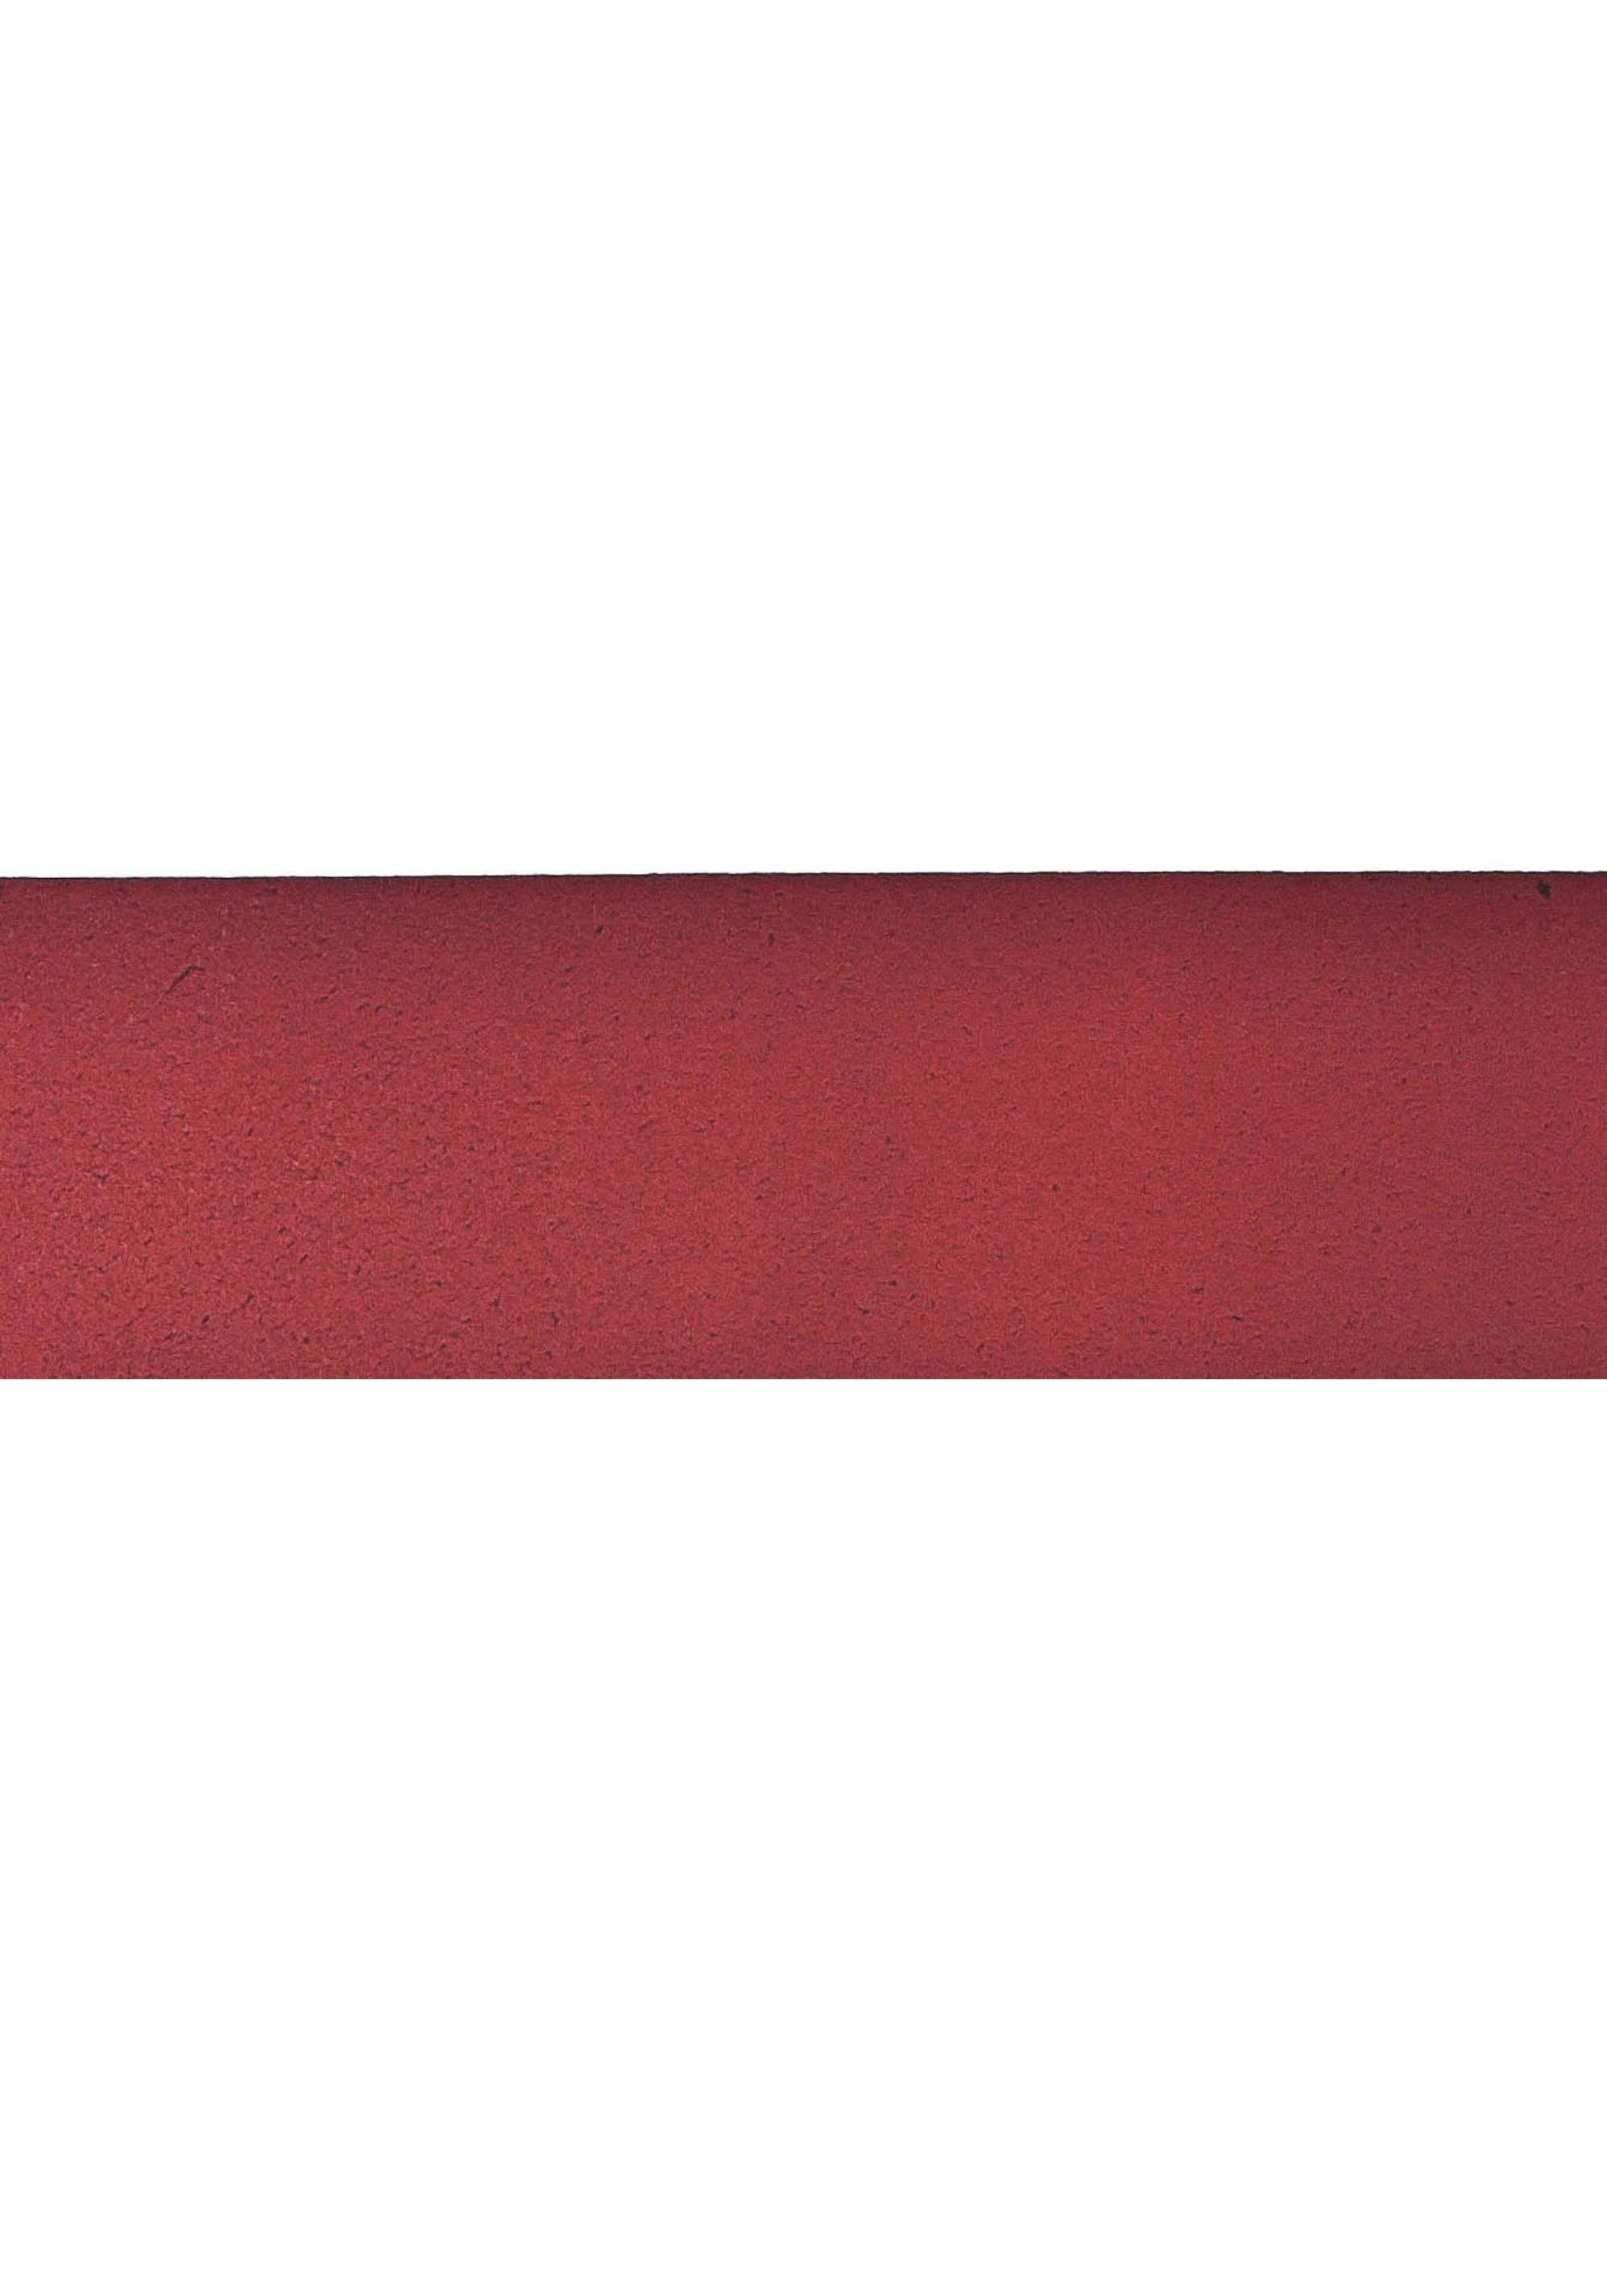 Gürtelschnalle im rot Ledergürtel Vanzetti Antik-Look